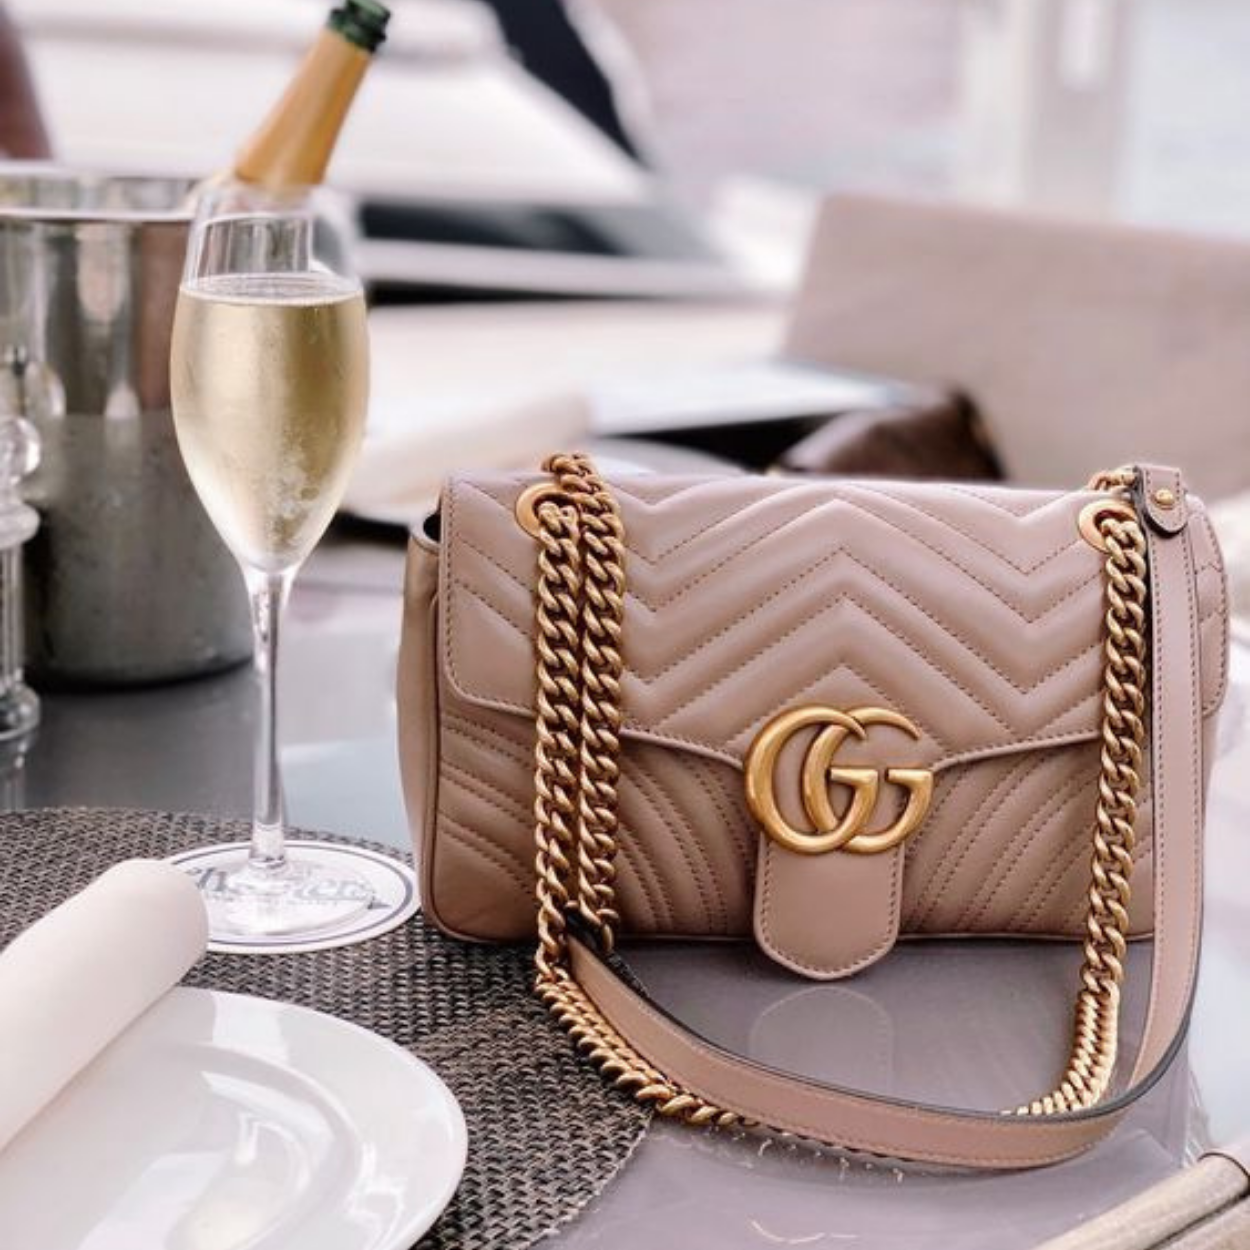 Uma bolsa original Gucci deve ter as duas letras "G" alinhadas